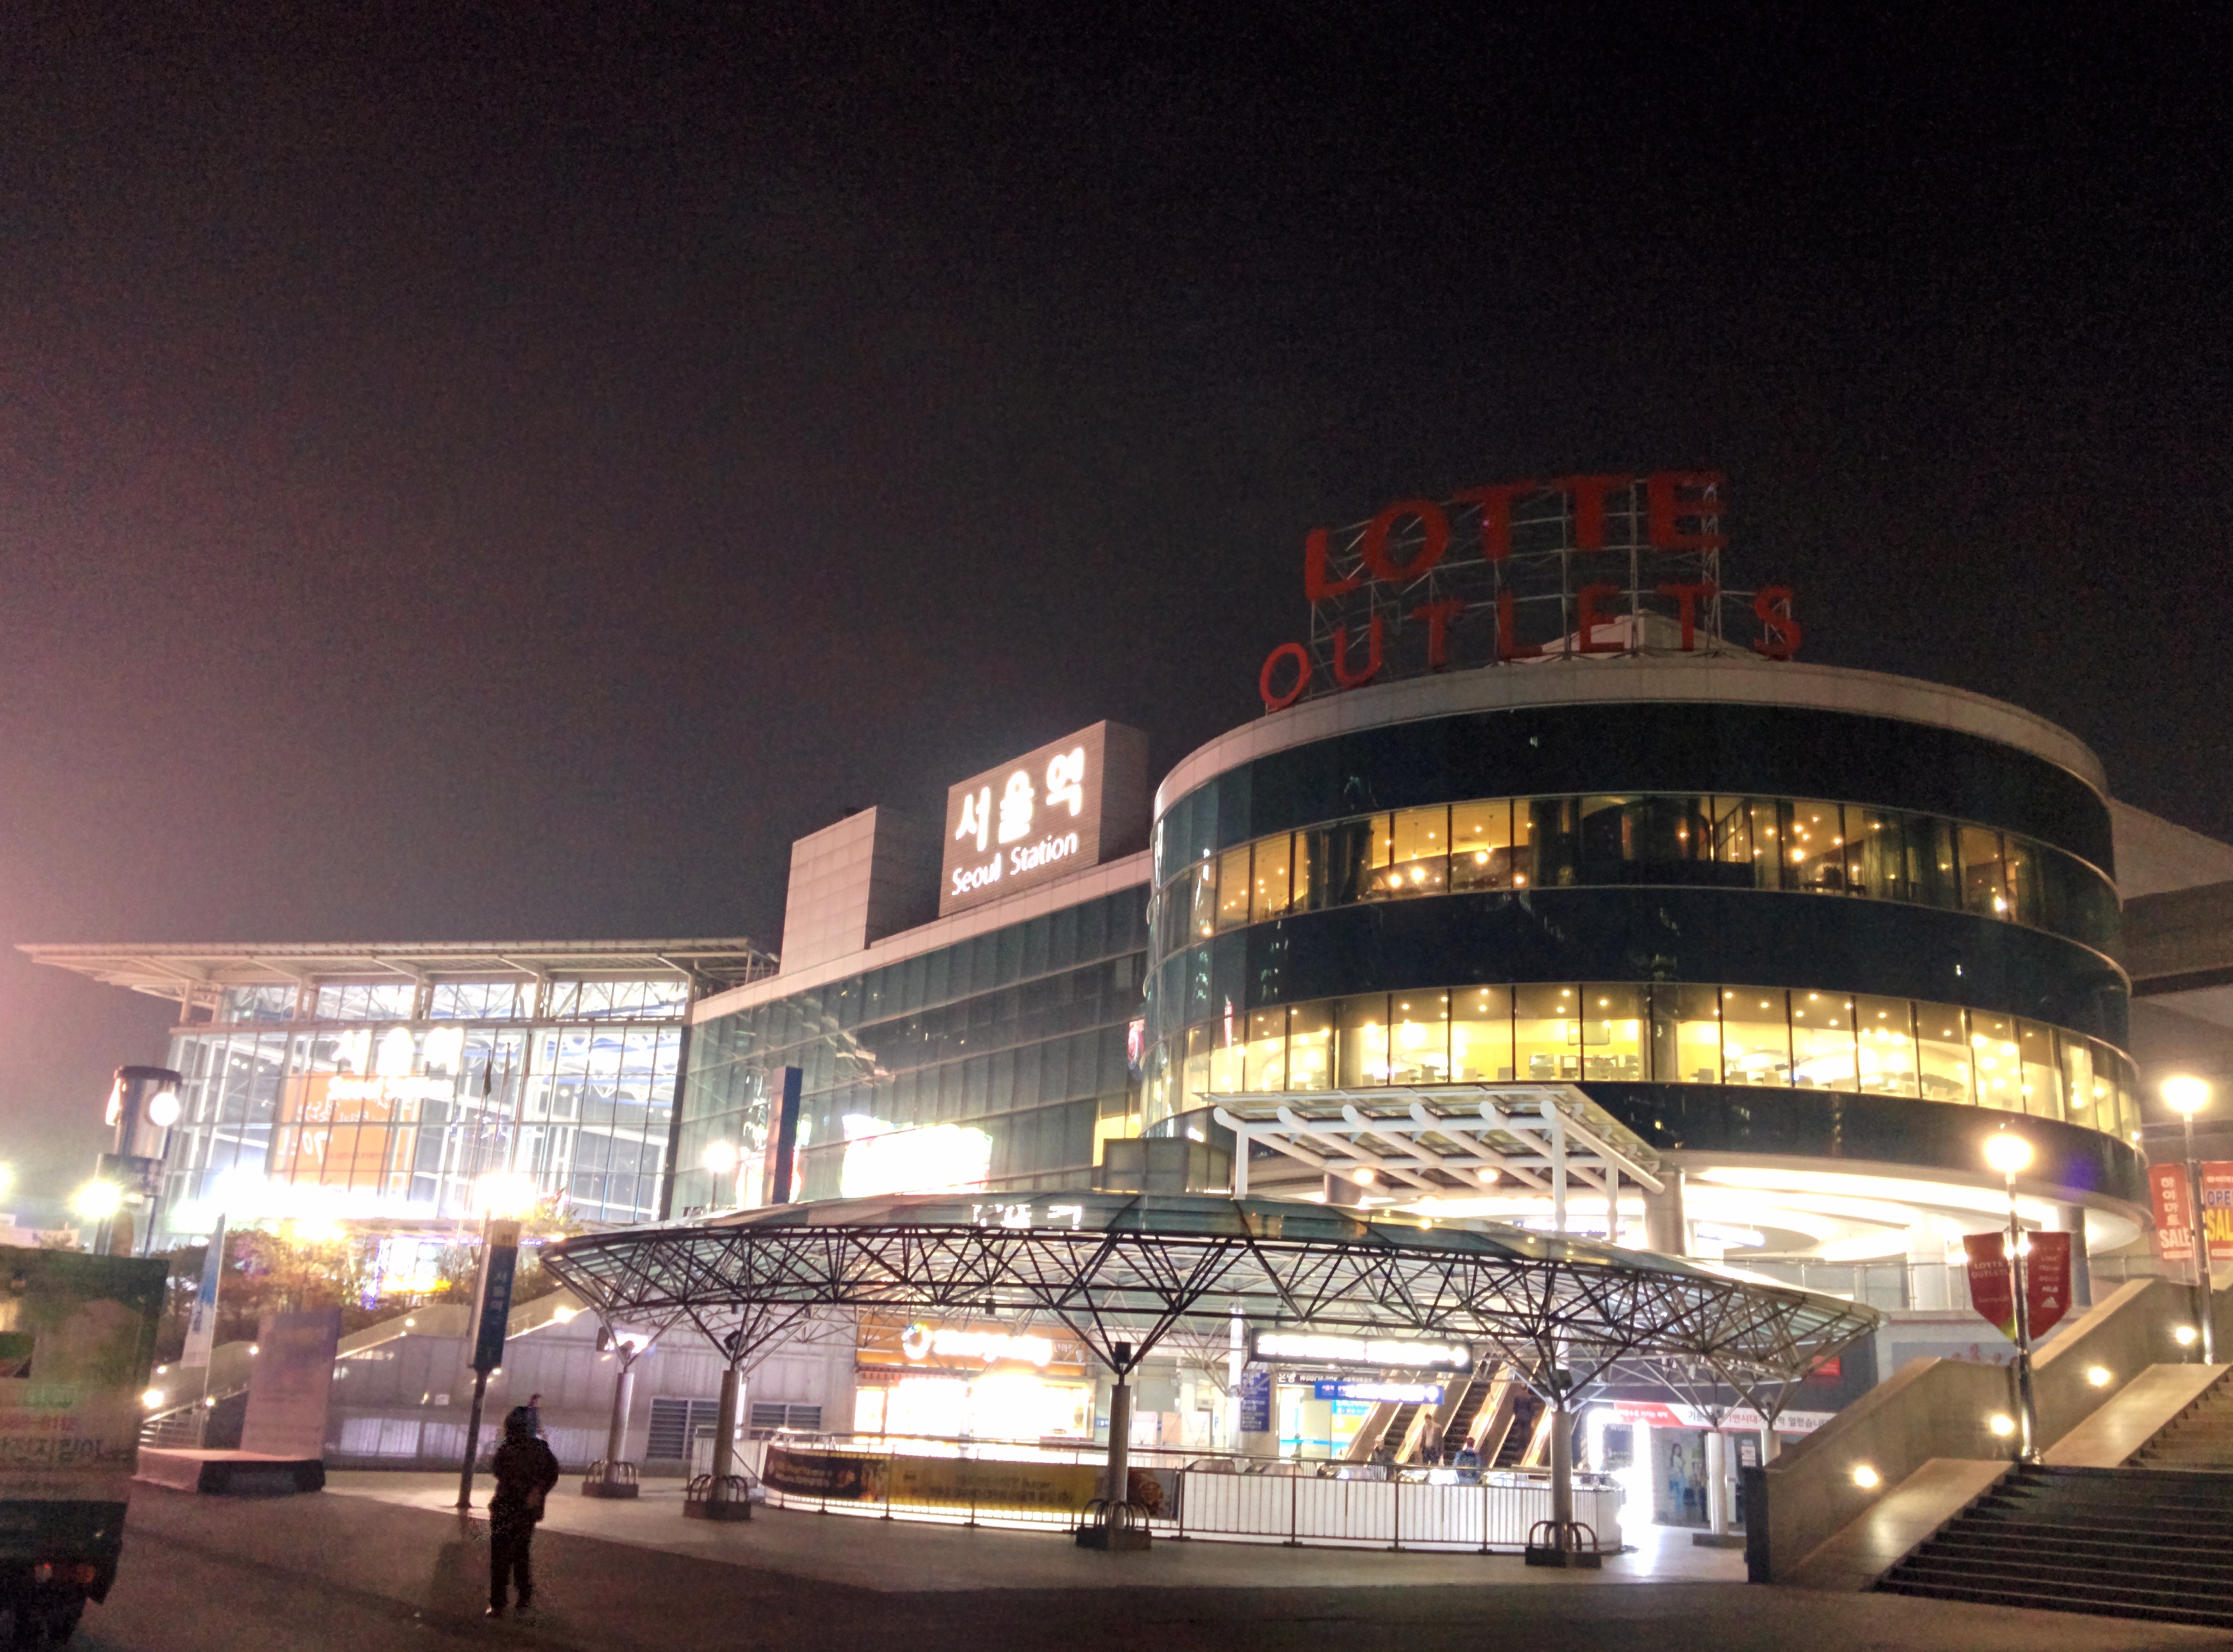 IMG_20151110_062418.jpg 새벽의 서울역 풍경